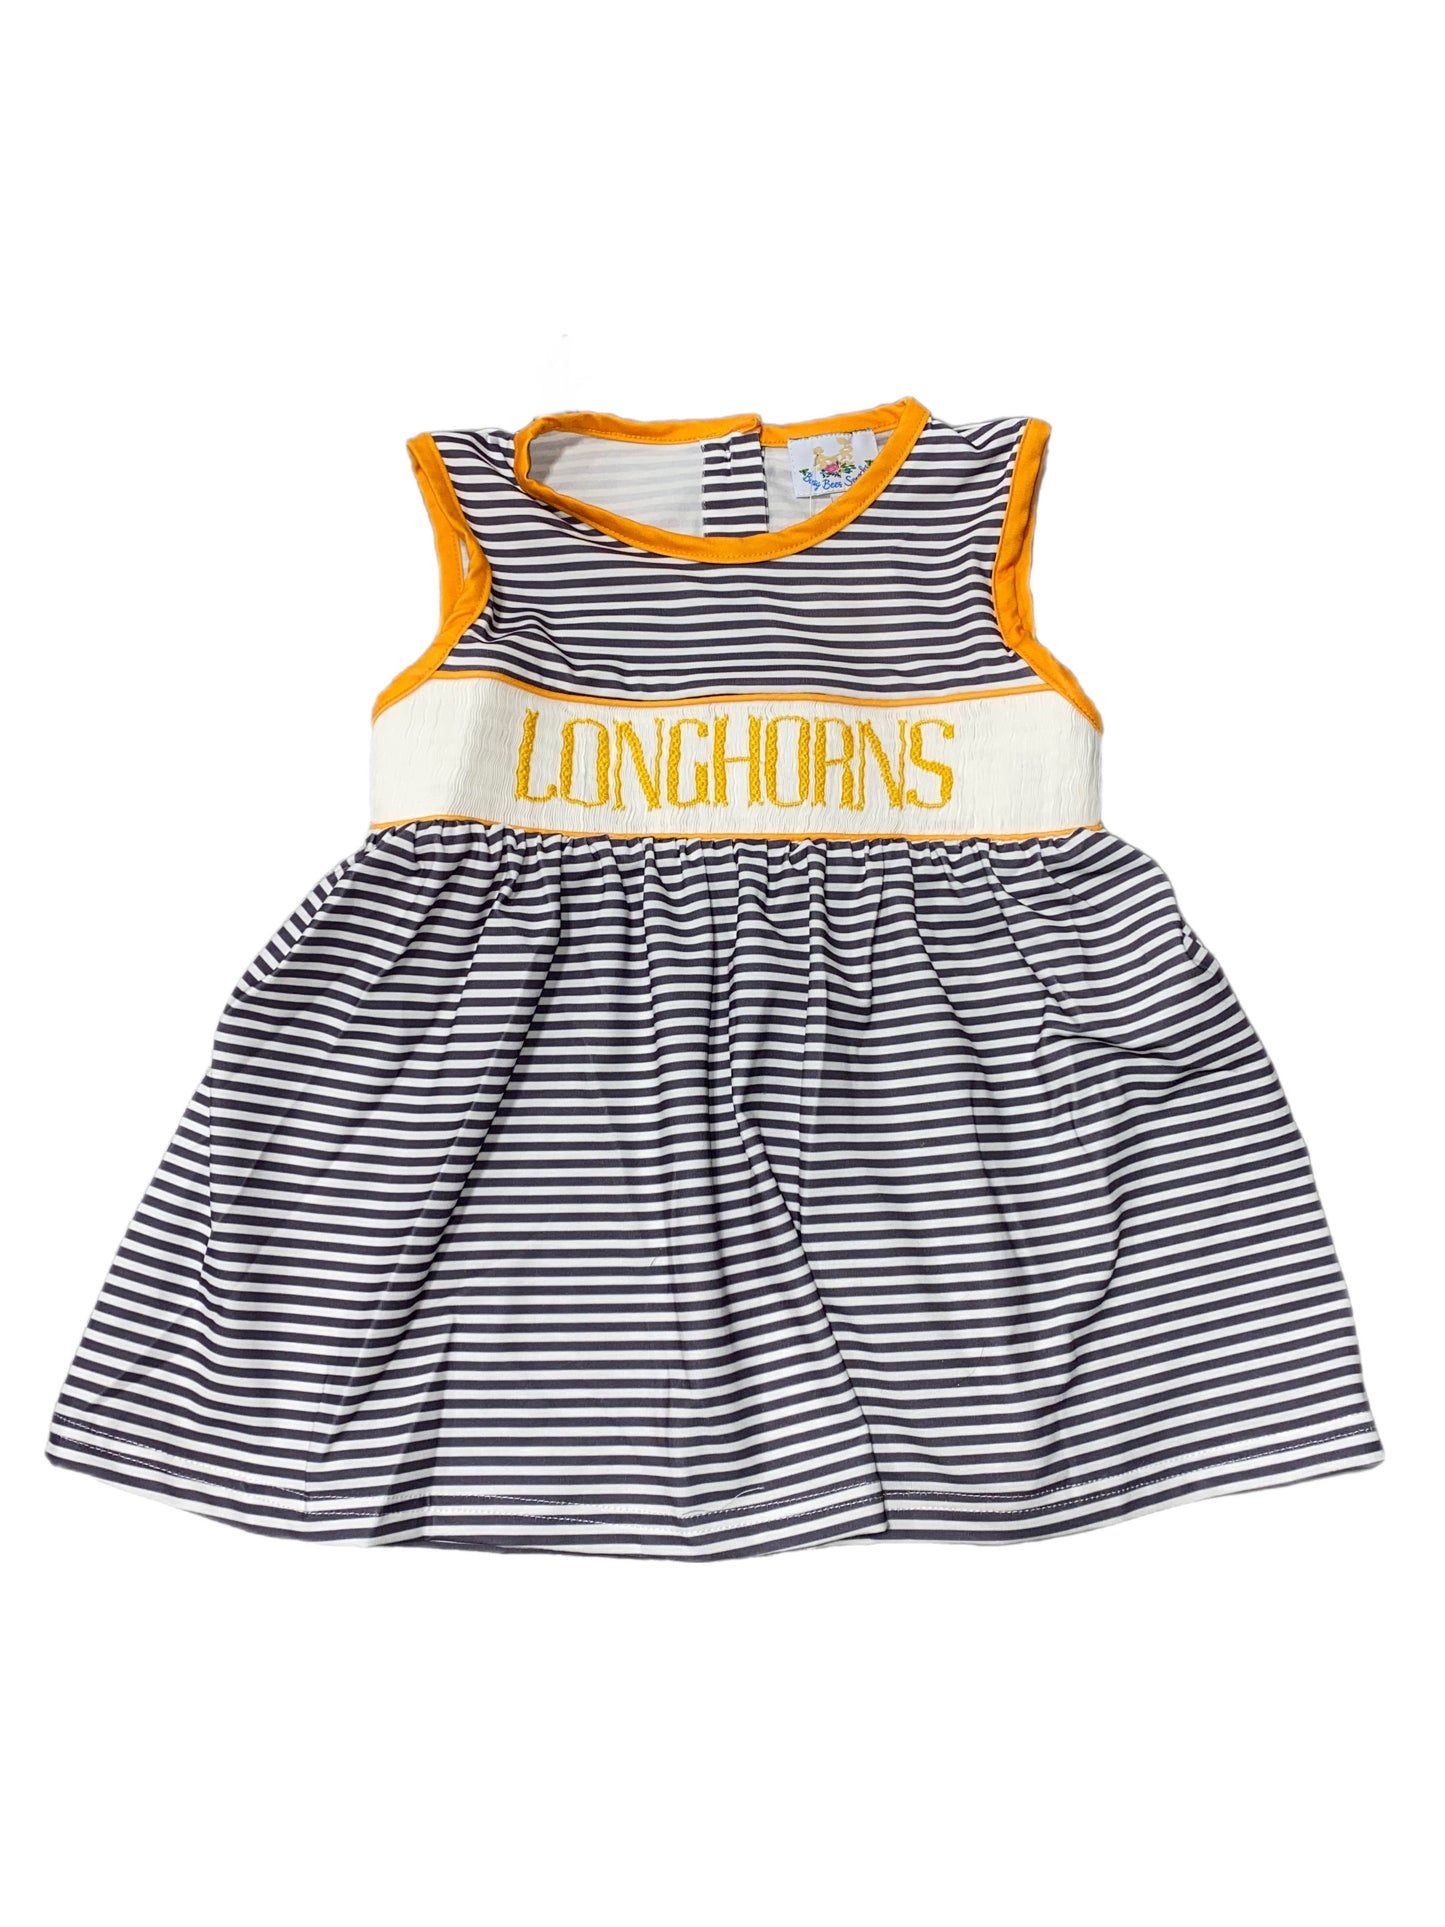 RTS: Girls Gray Stripe & Orange Sleeveless Name Smock Shirt “ LONGHORNS “